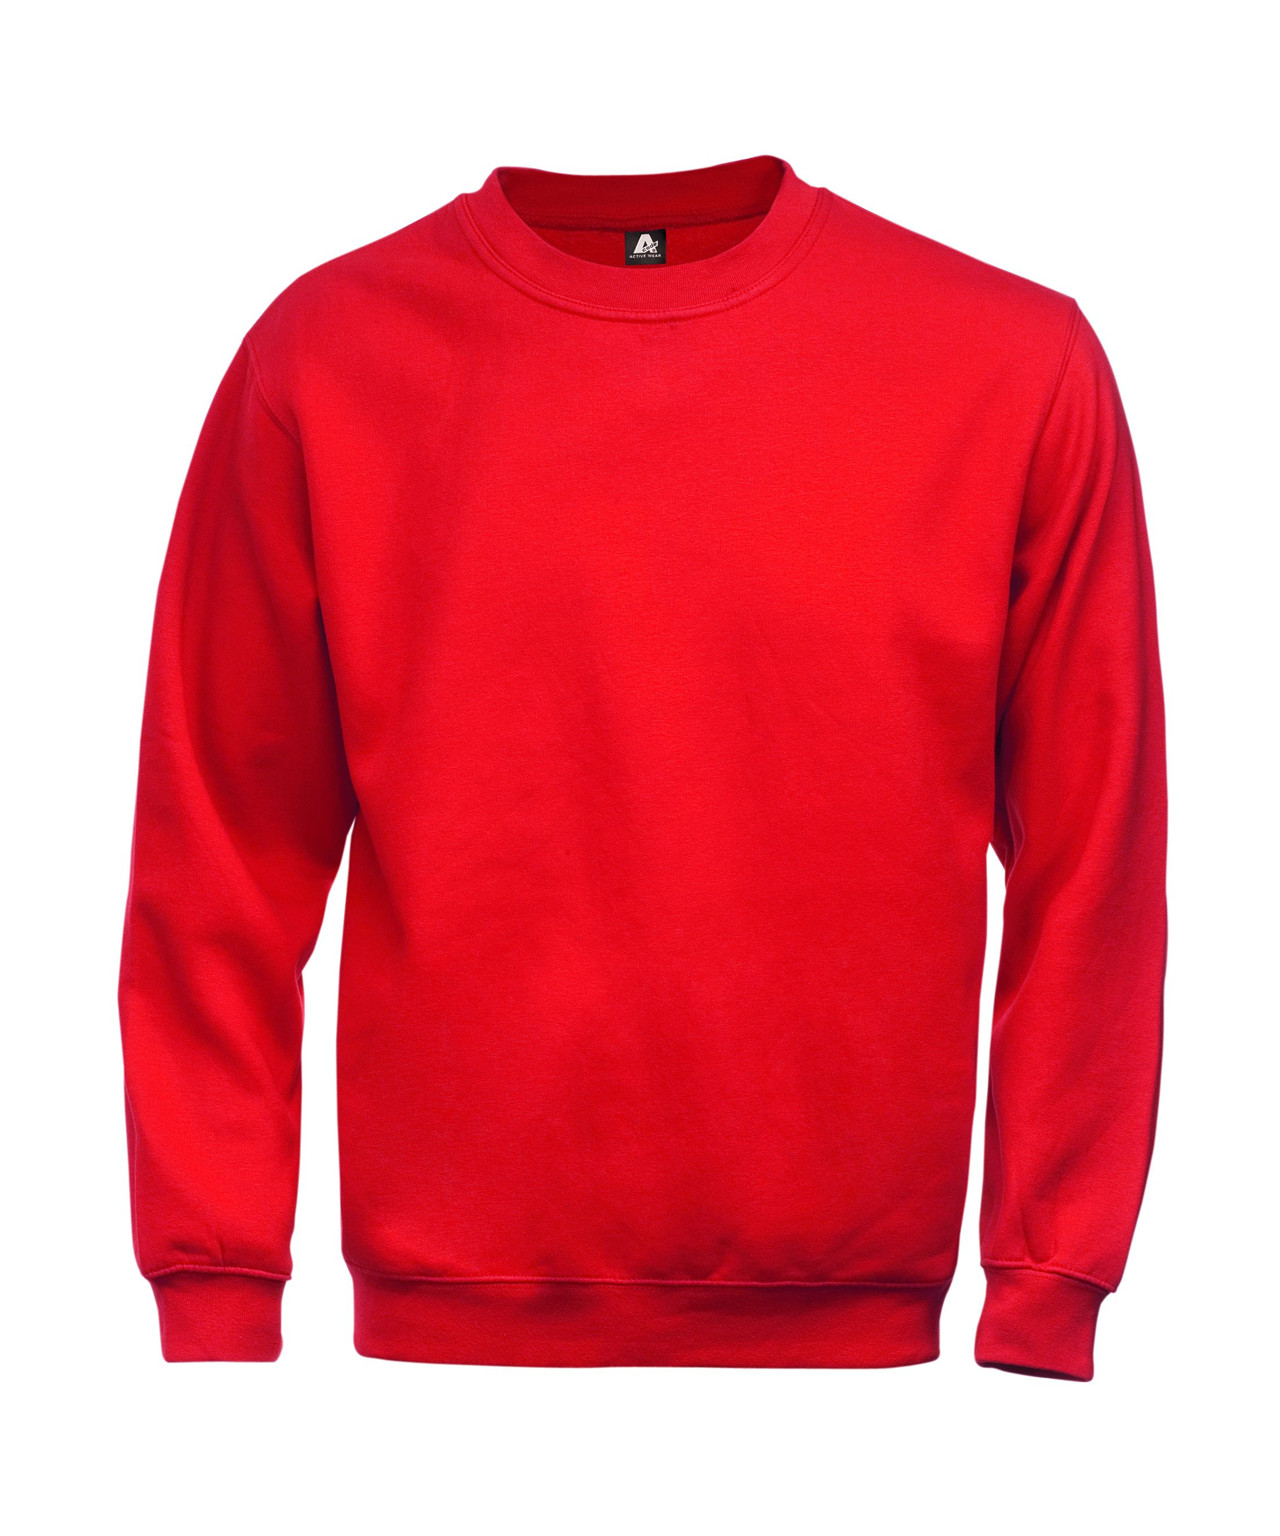 Se Kansas/Fristads A-Code klassisk sweatshirt (Rød, L) hos Specialbutikken